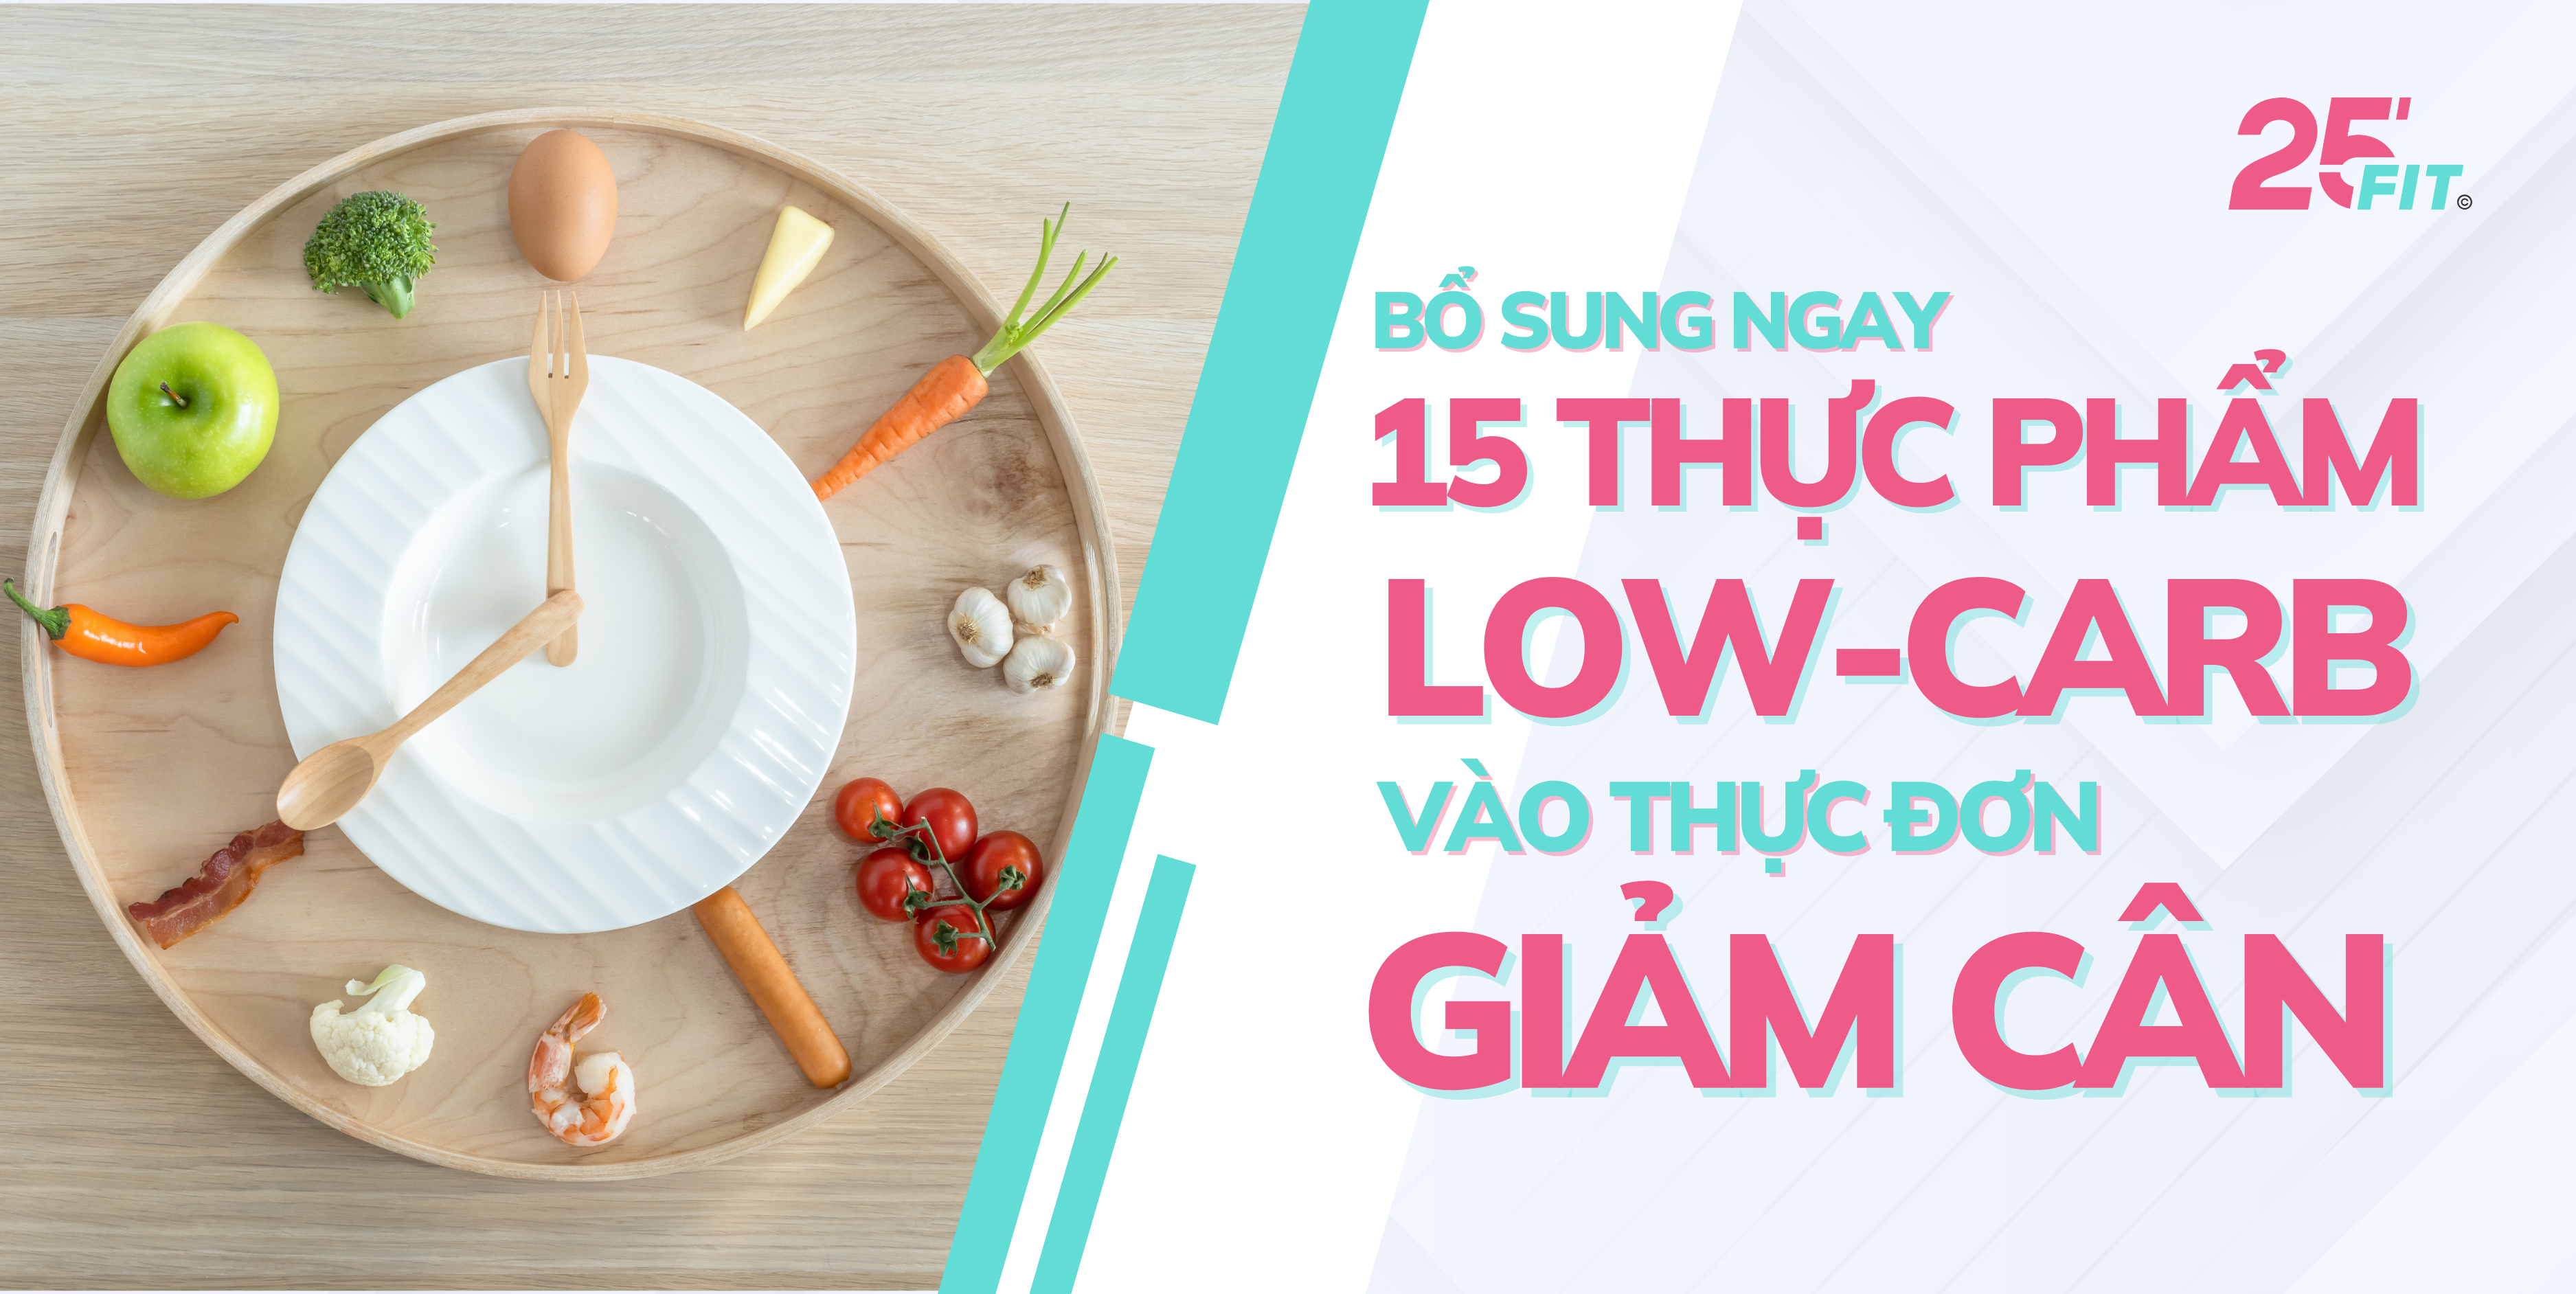 Bổ sung 15 thực phẩm Low-carb sau vào thực đơn giảm cân của bạn